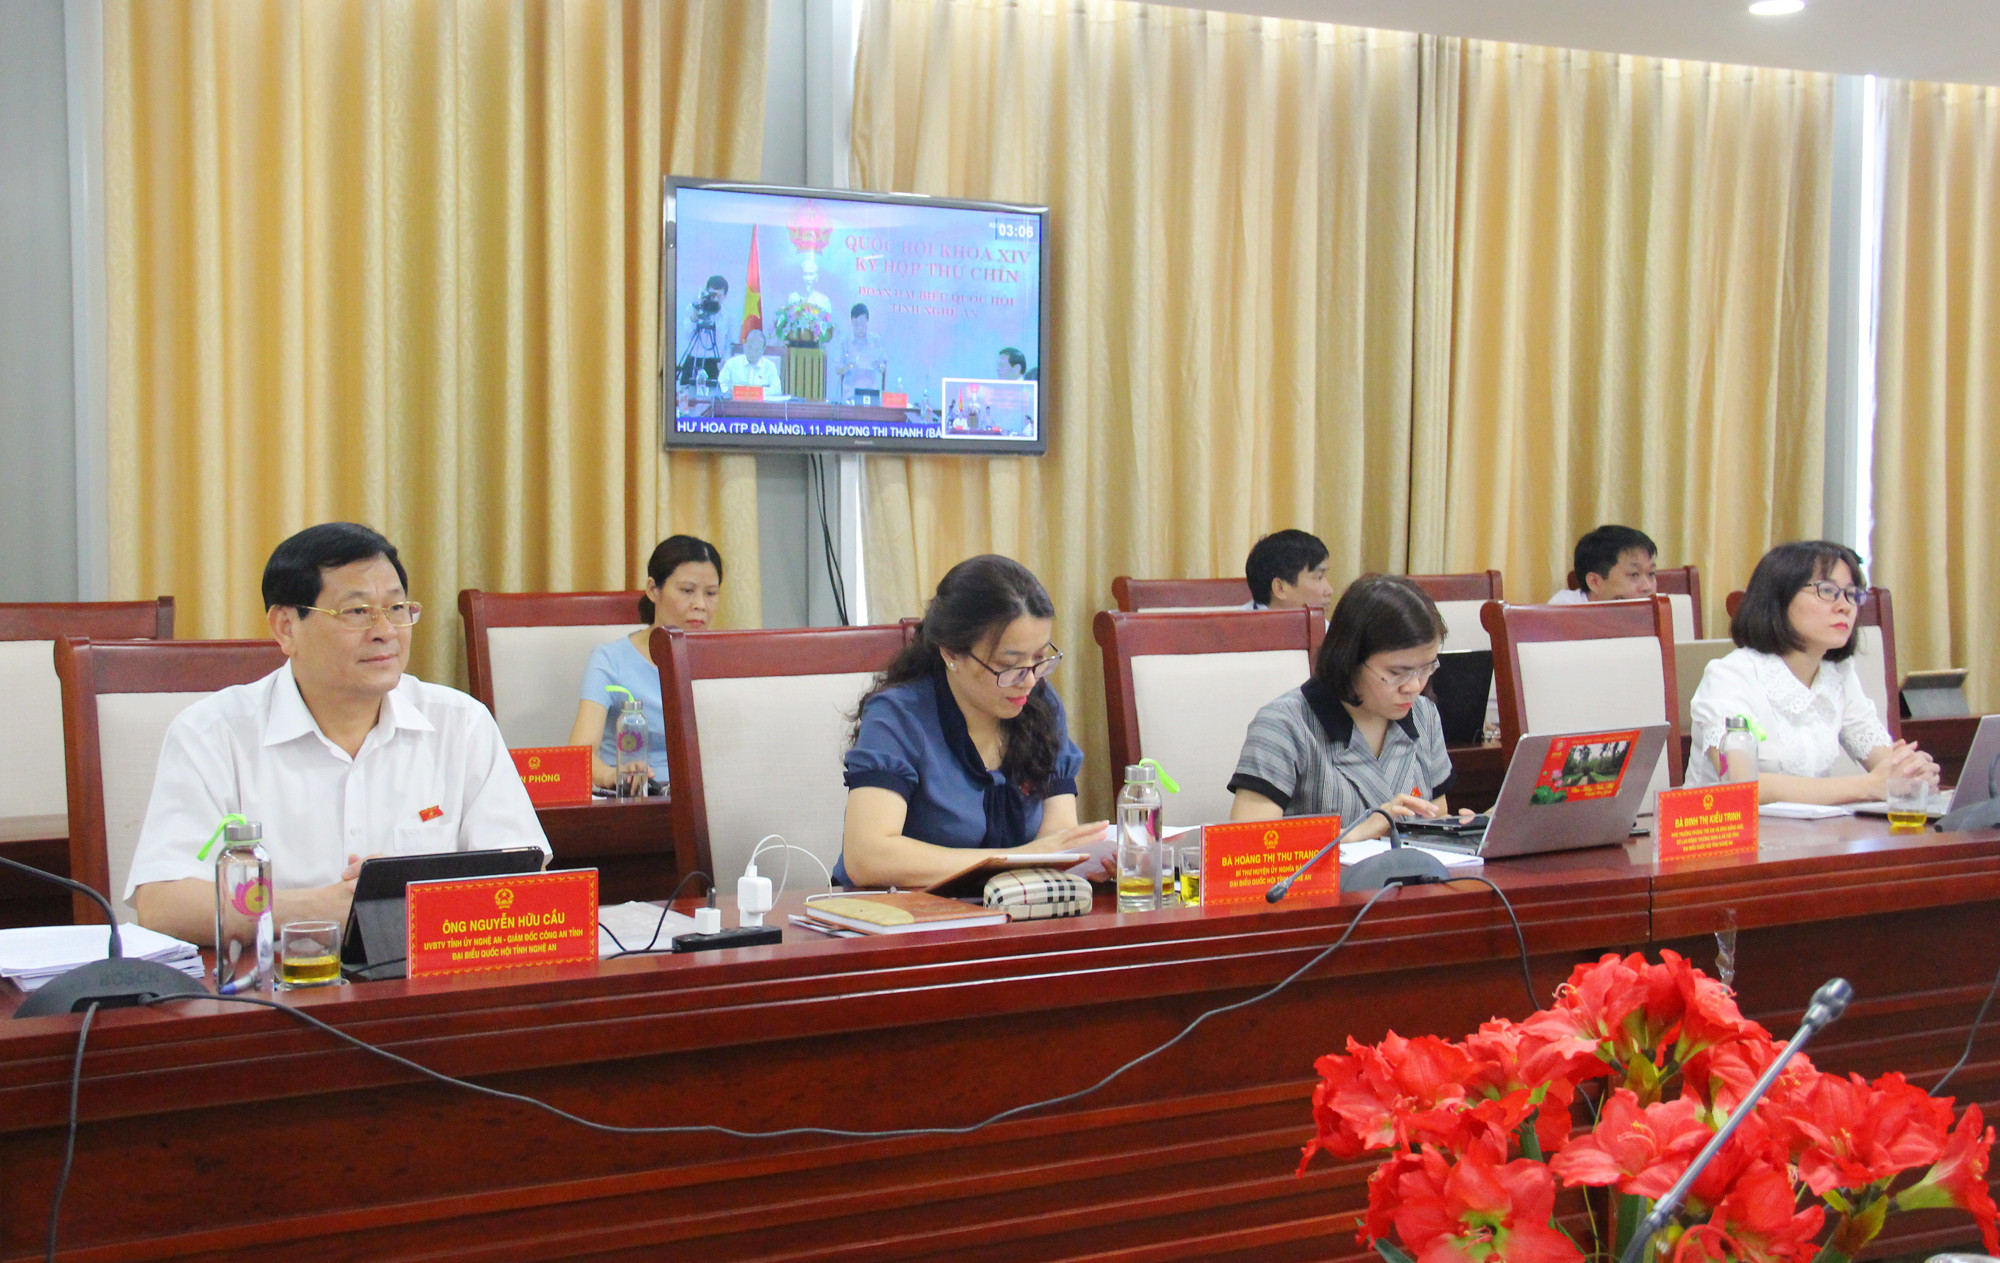 Các đại biểu tham gia hội nghị tại điểm cầu Nghệ An. Ảnh: Thanh Quỳnh